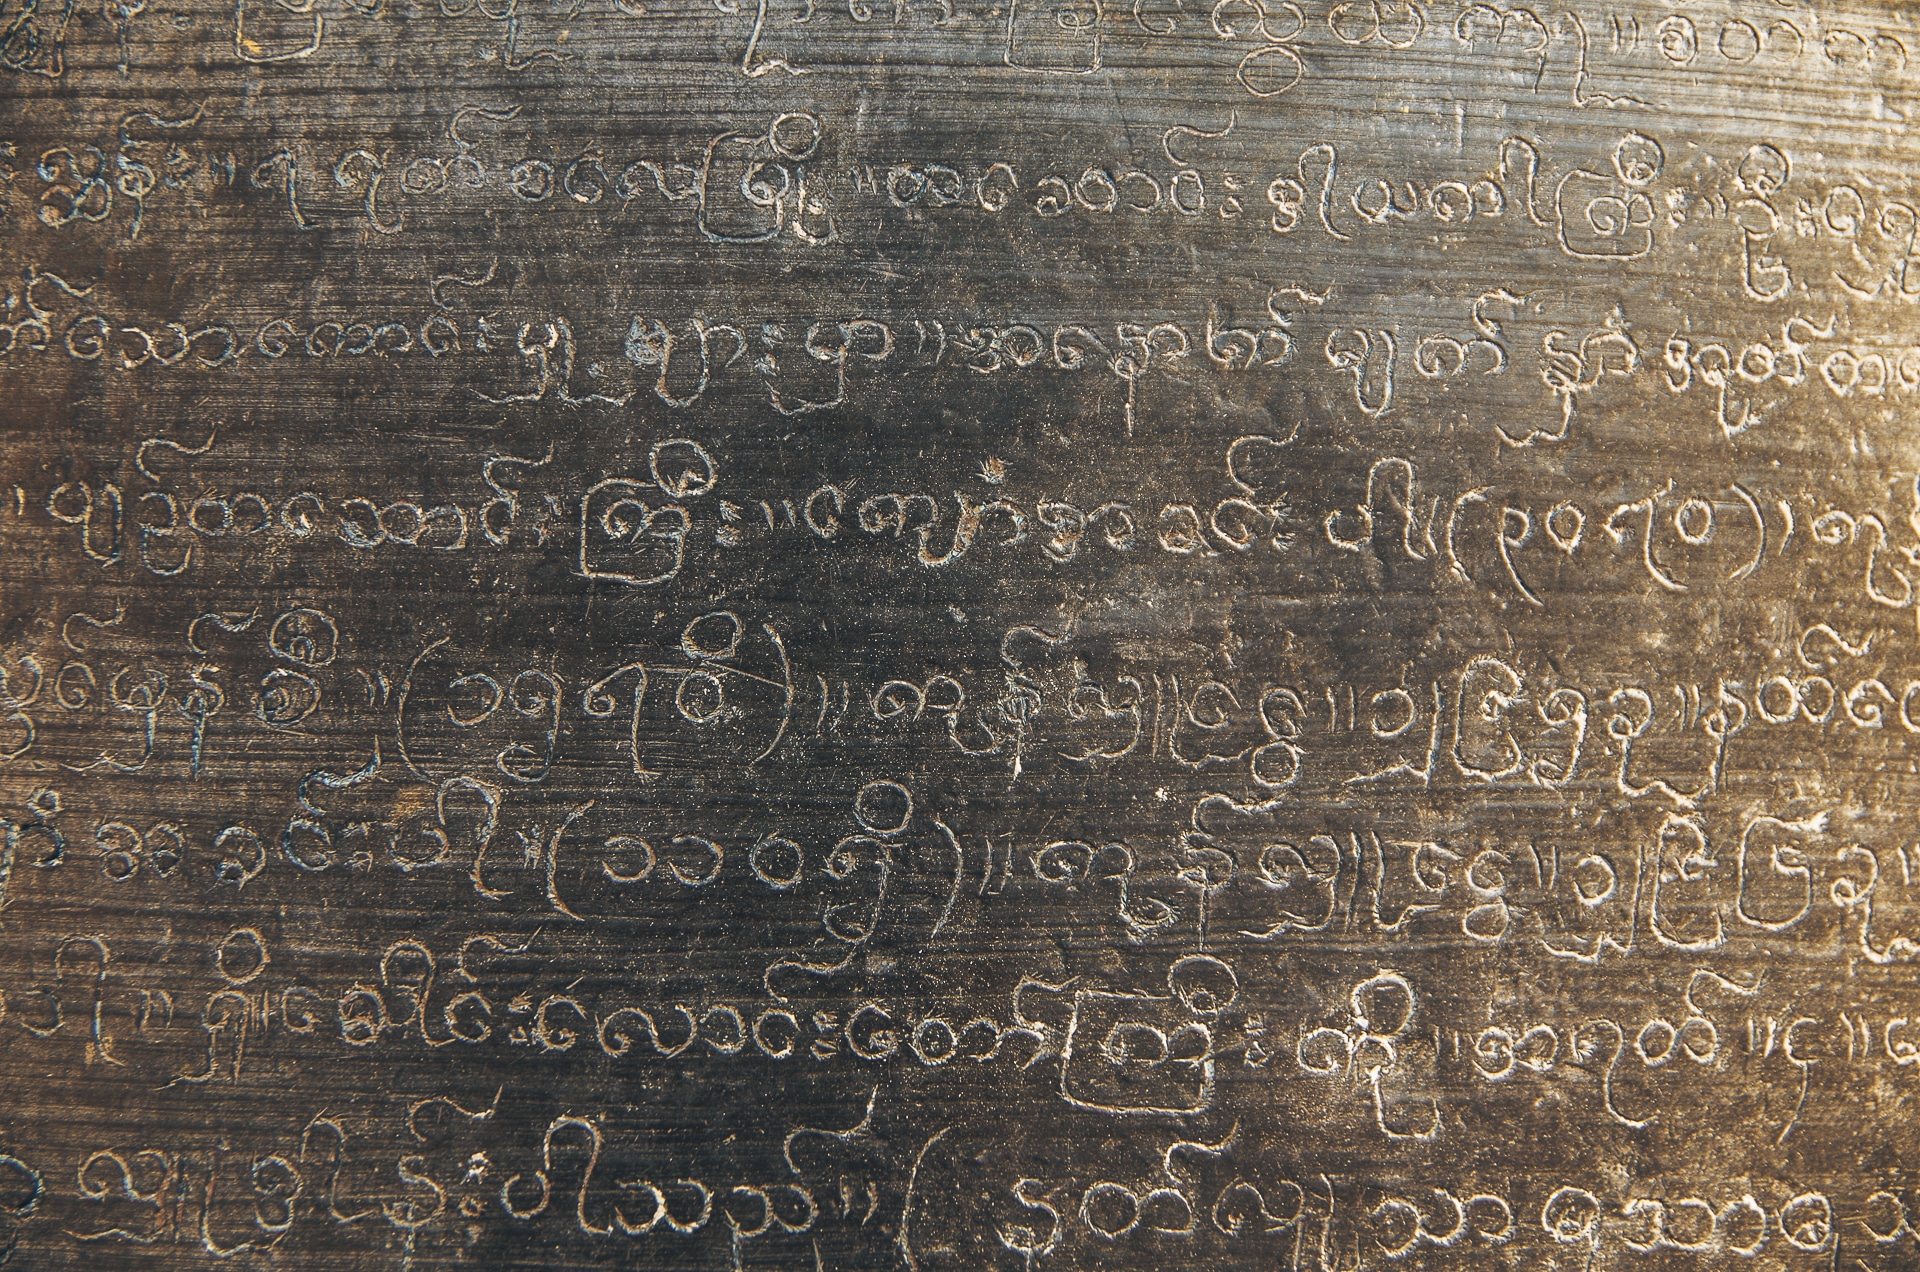 écriture birmane gravée sur la cloche du temple d'Ananda à Bagan